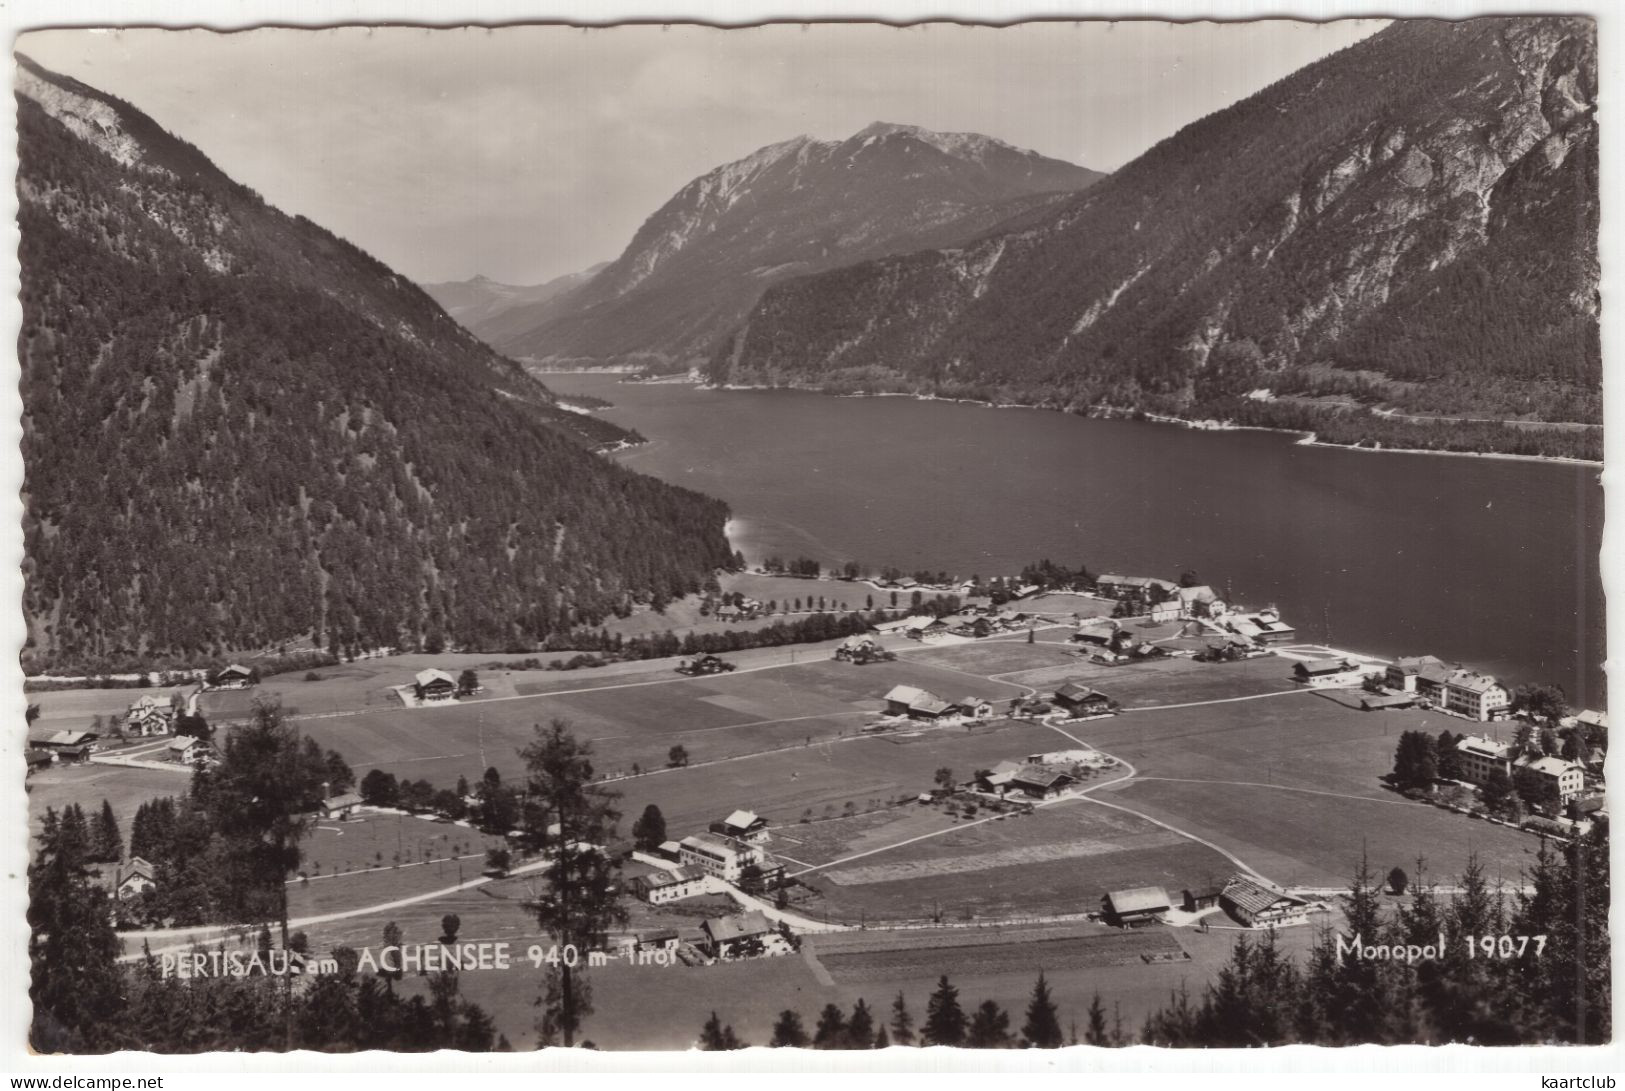 Pertisau Am Achensee 940 M Tirol - Monopol 19077 - (Tirol, Österreich) - Pertisau